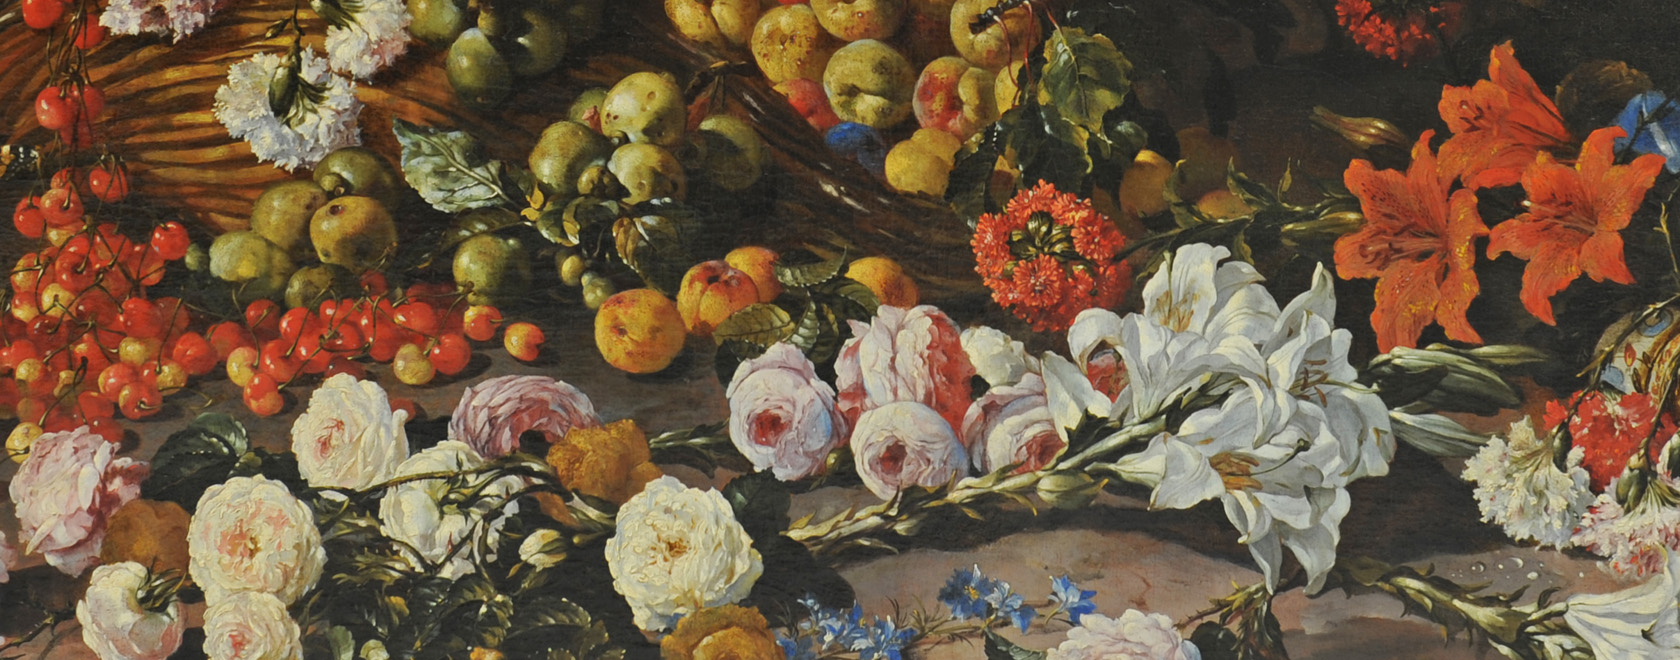 Paolo Porpora, Nature morte aux fleurs, avec un vase d’Orient et des oiseaux, vers 1660 - 1673, huile sur toile, 125 x 177 cm, Valence, musée des Beaux-Arts (détail), Photo © Eric Caillet